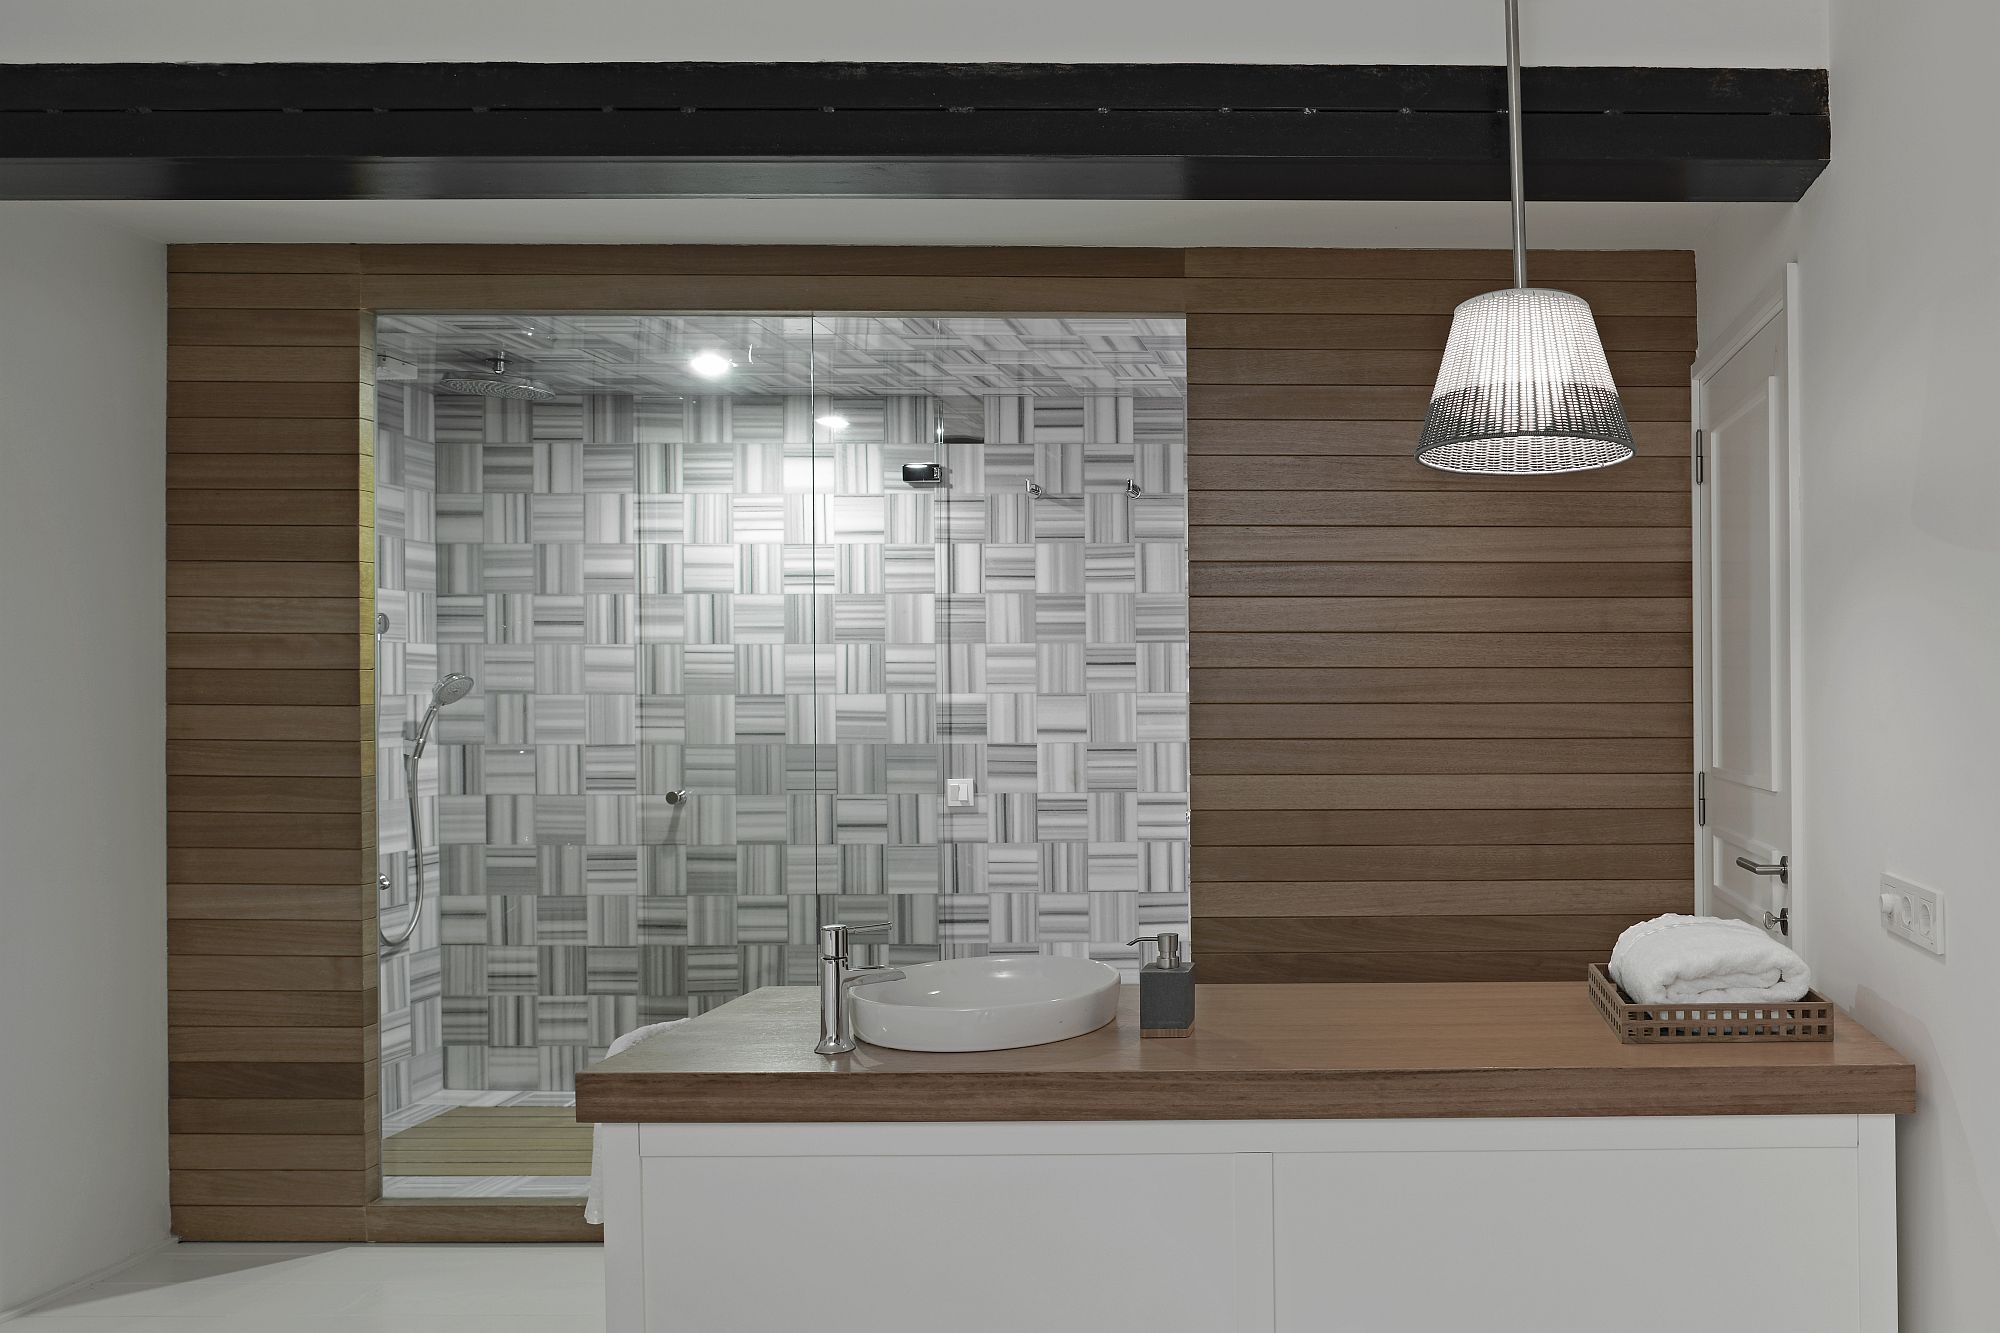 Unique tile design for the shower area